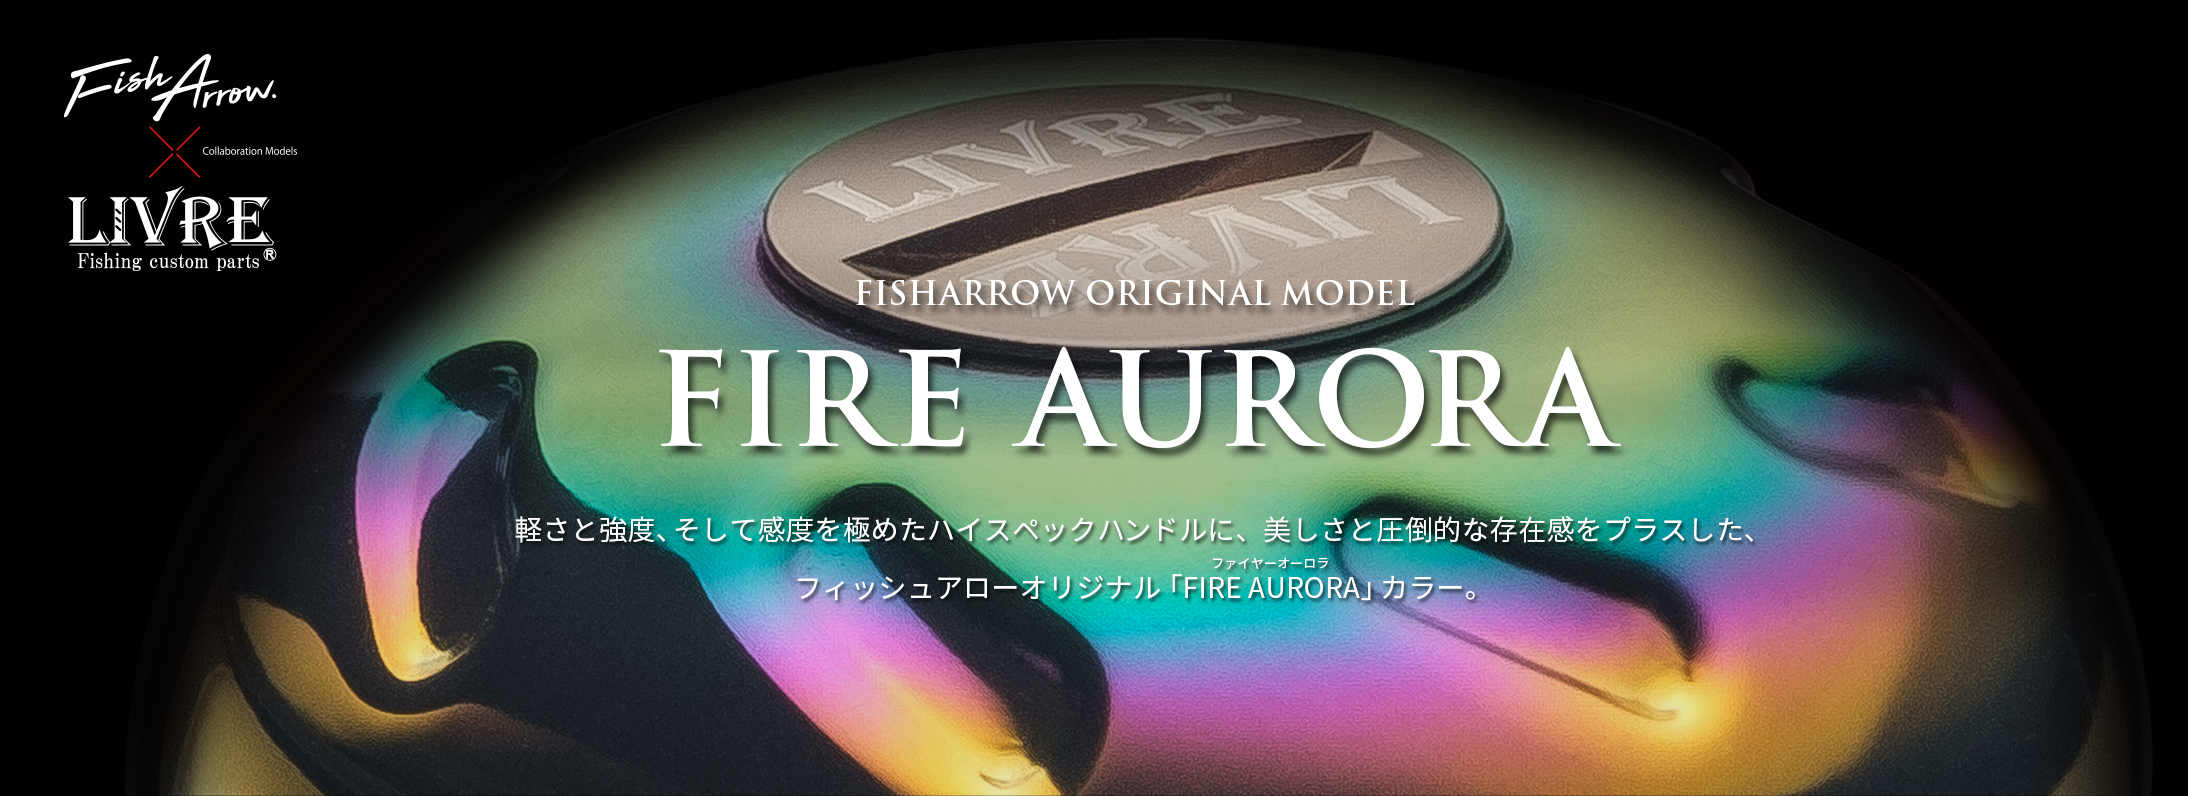 Fireauroraシリーズイメージ